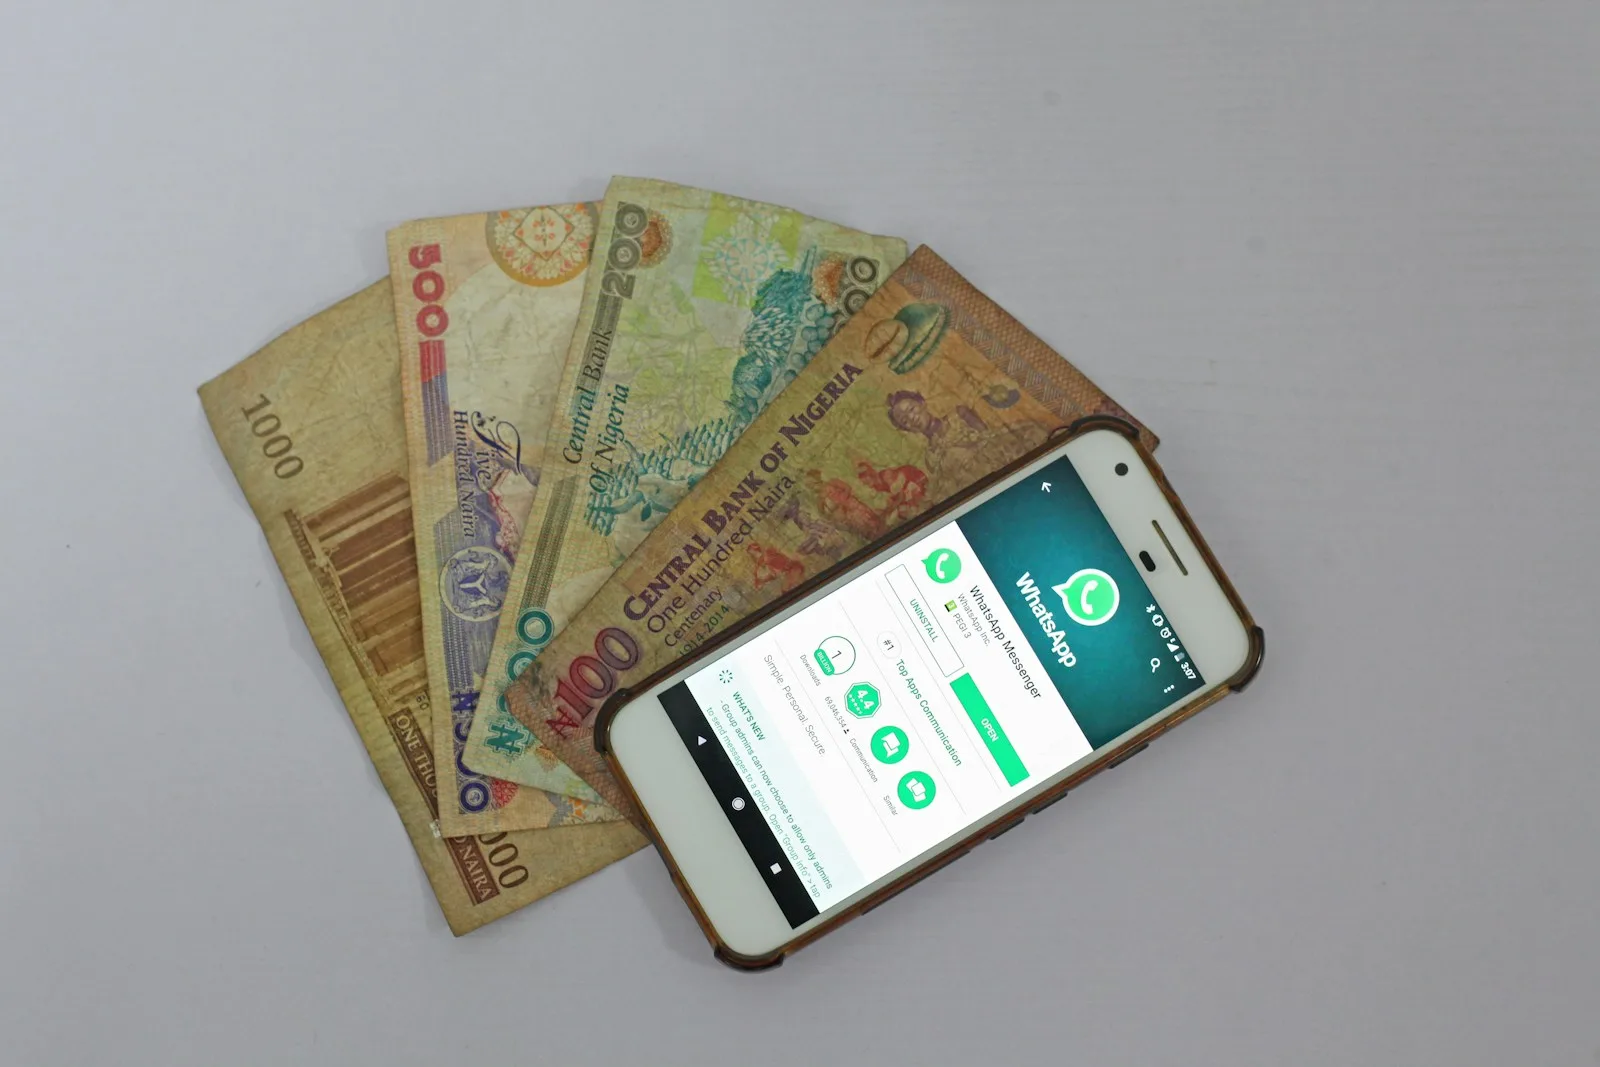 Smartphone Android blanco junto a los billetes